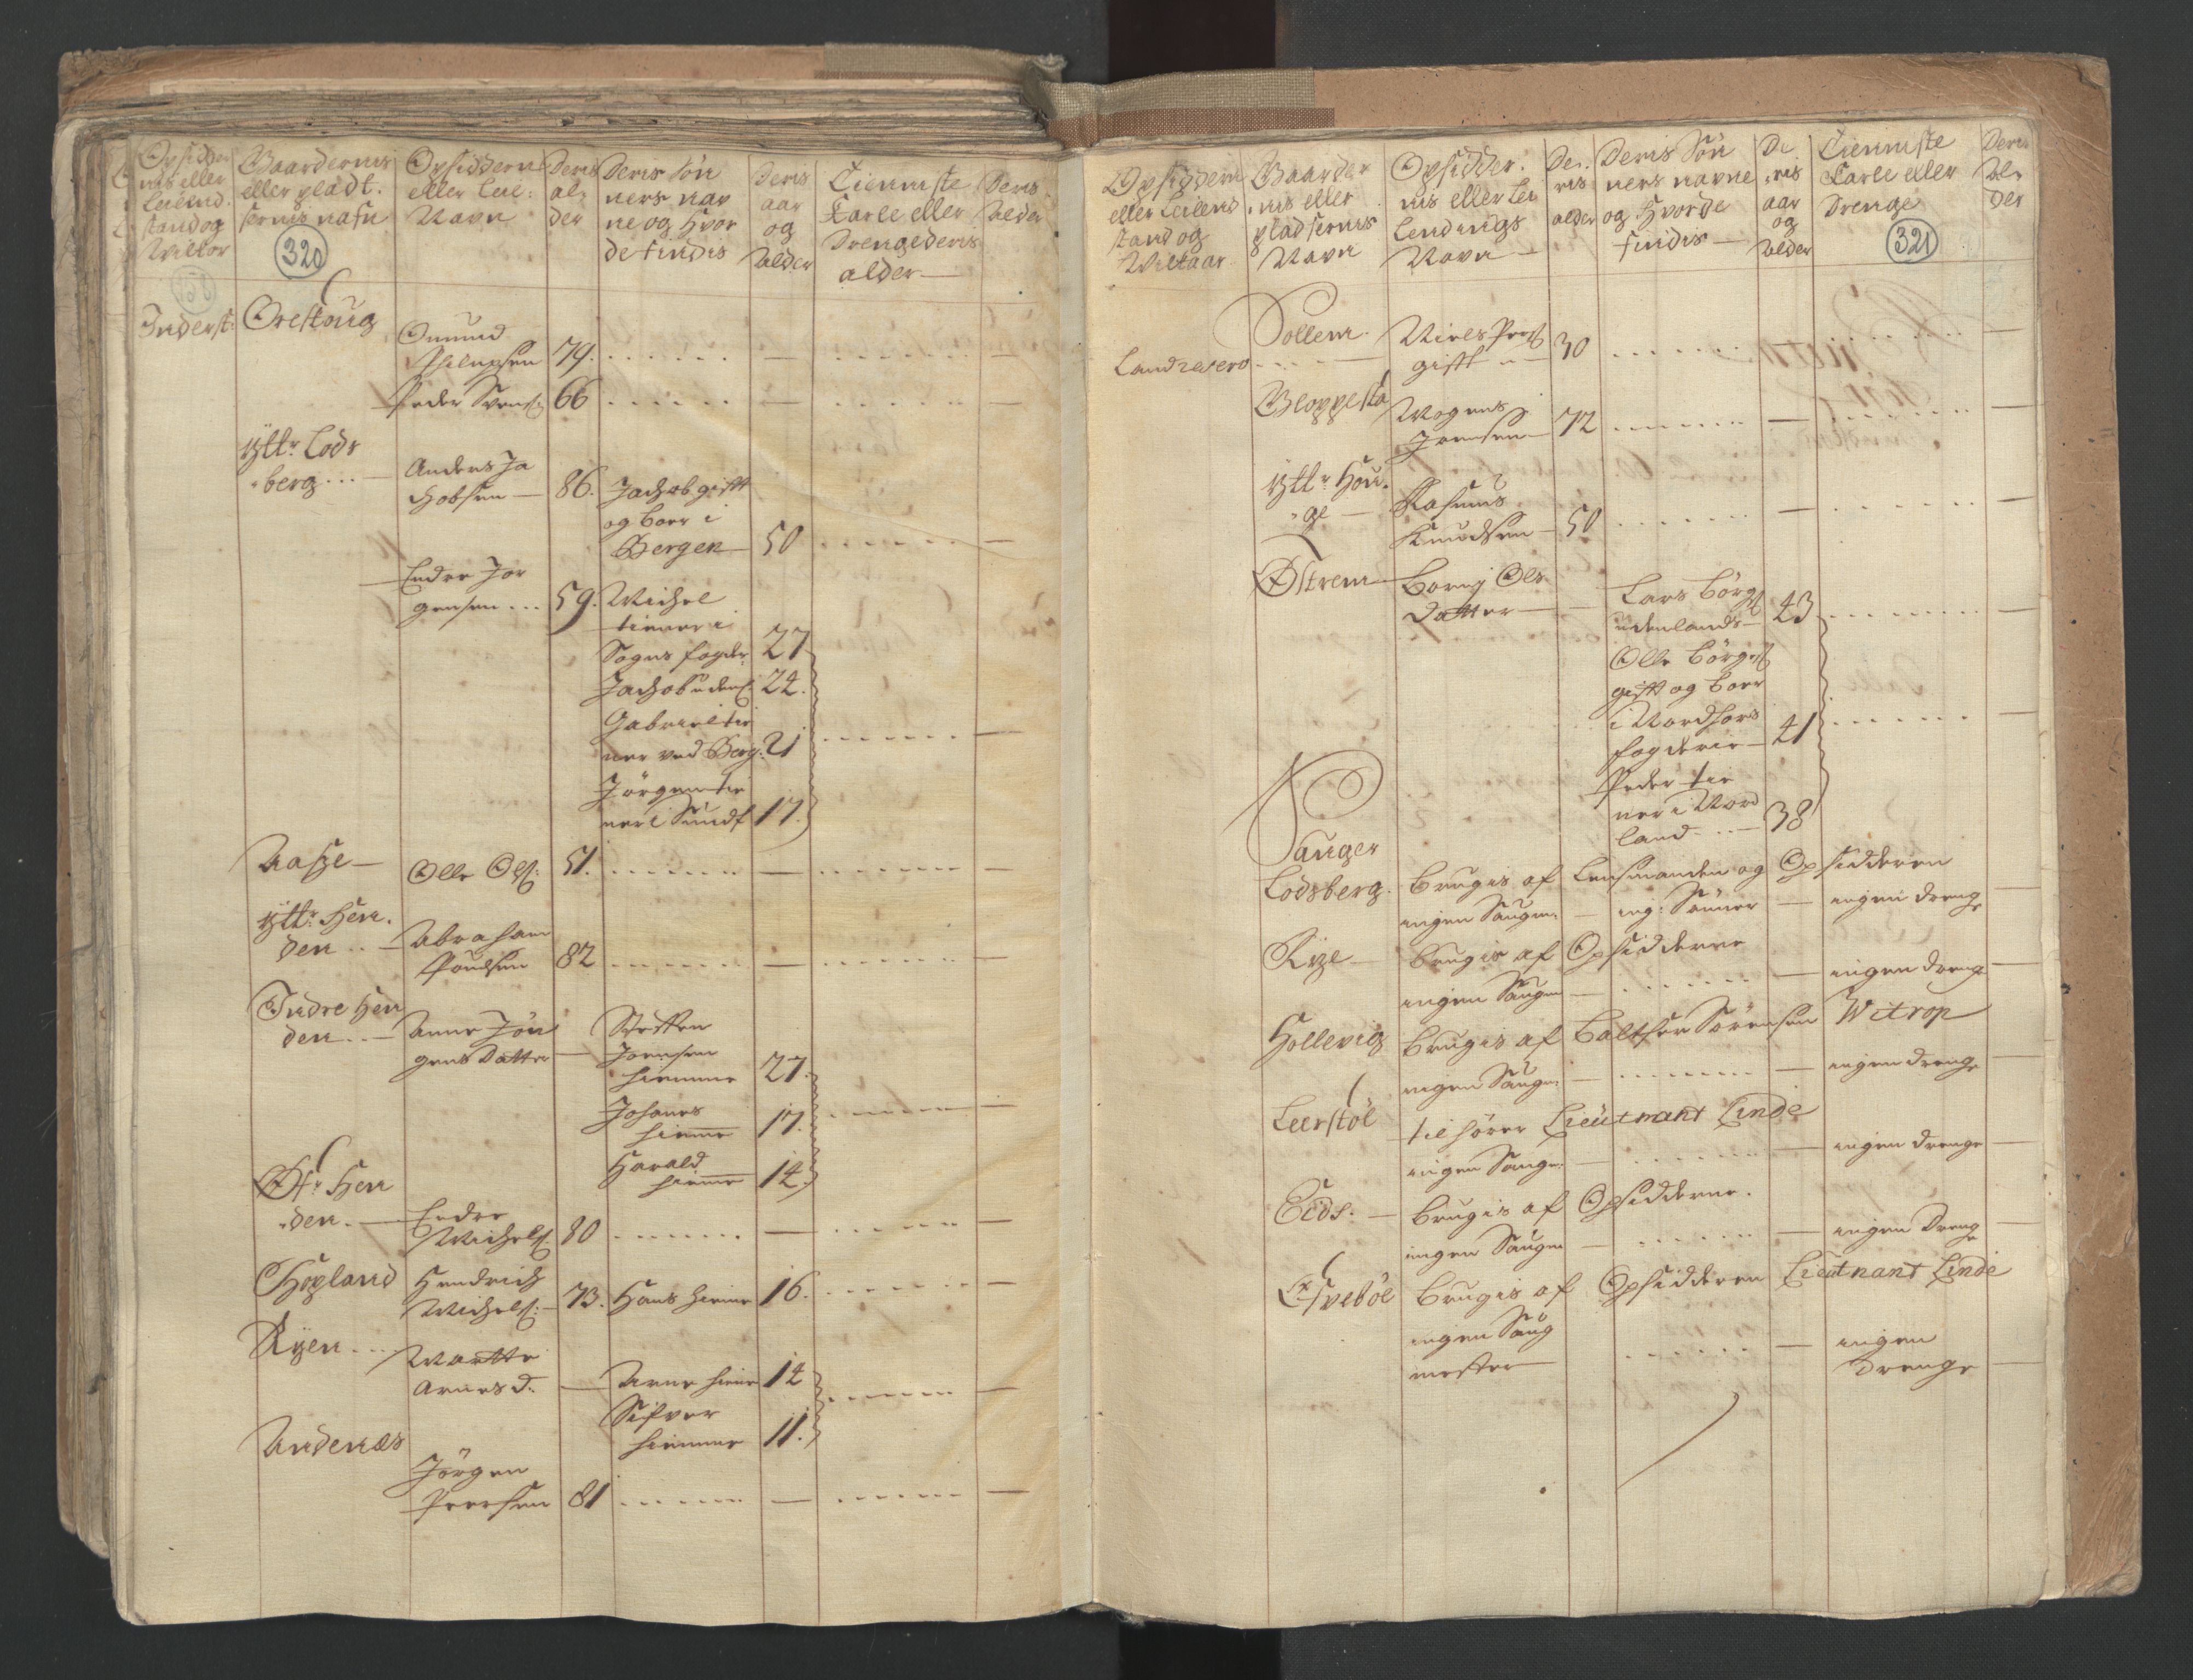 RA, Census (manntall) 1701, no. 9: Sunnfjord fogderi, Nordfjord fogderi and Svanø birk, 1701, p. 320-321